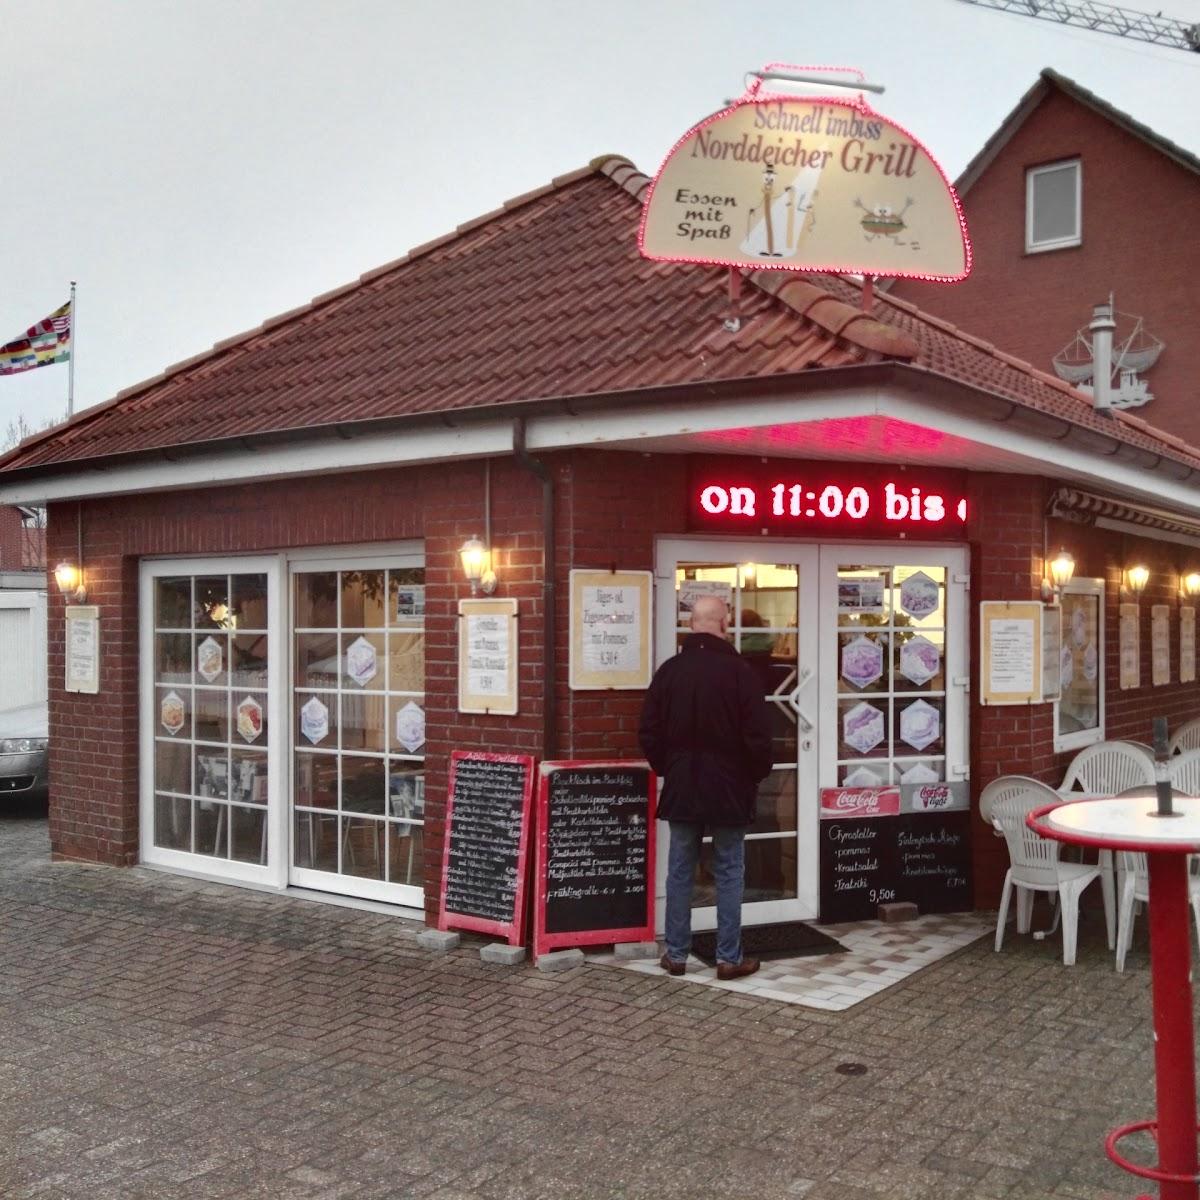 Restaurant "NORDDEICHER GRILL" in Norden